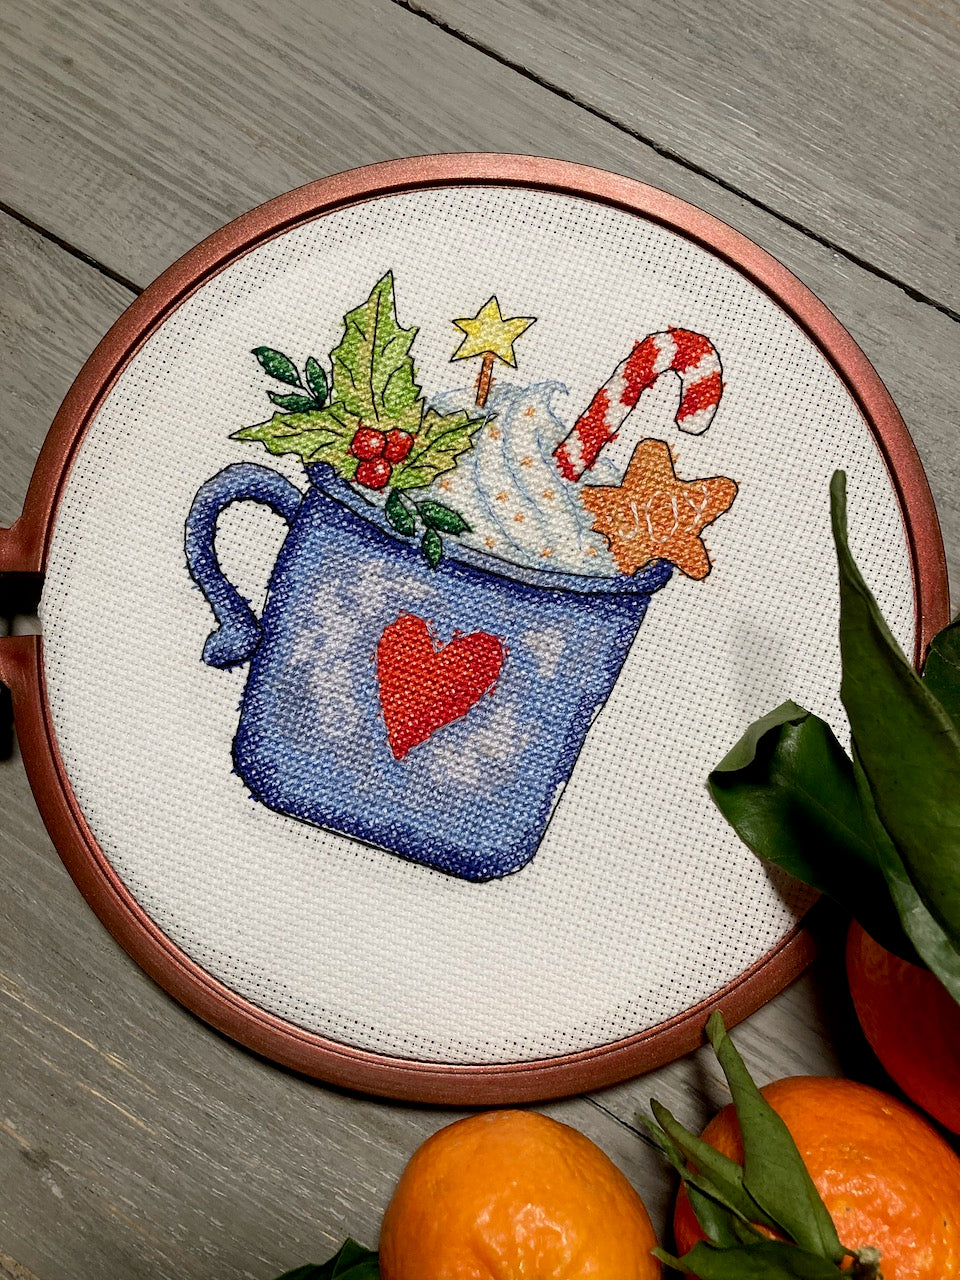 Christmas Cup - cross stitch pattern finish